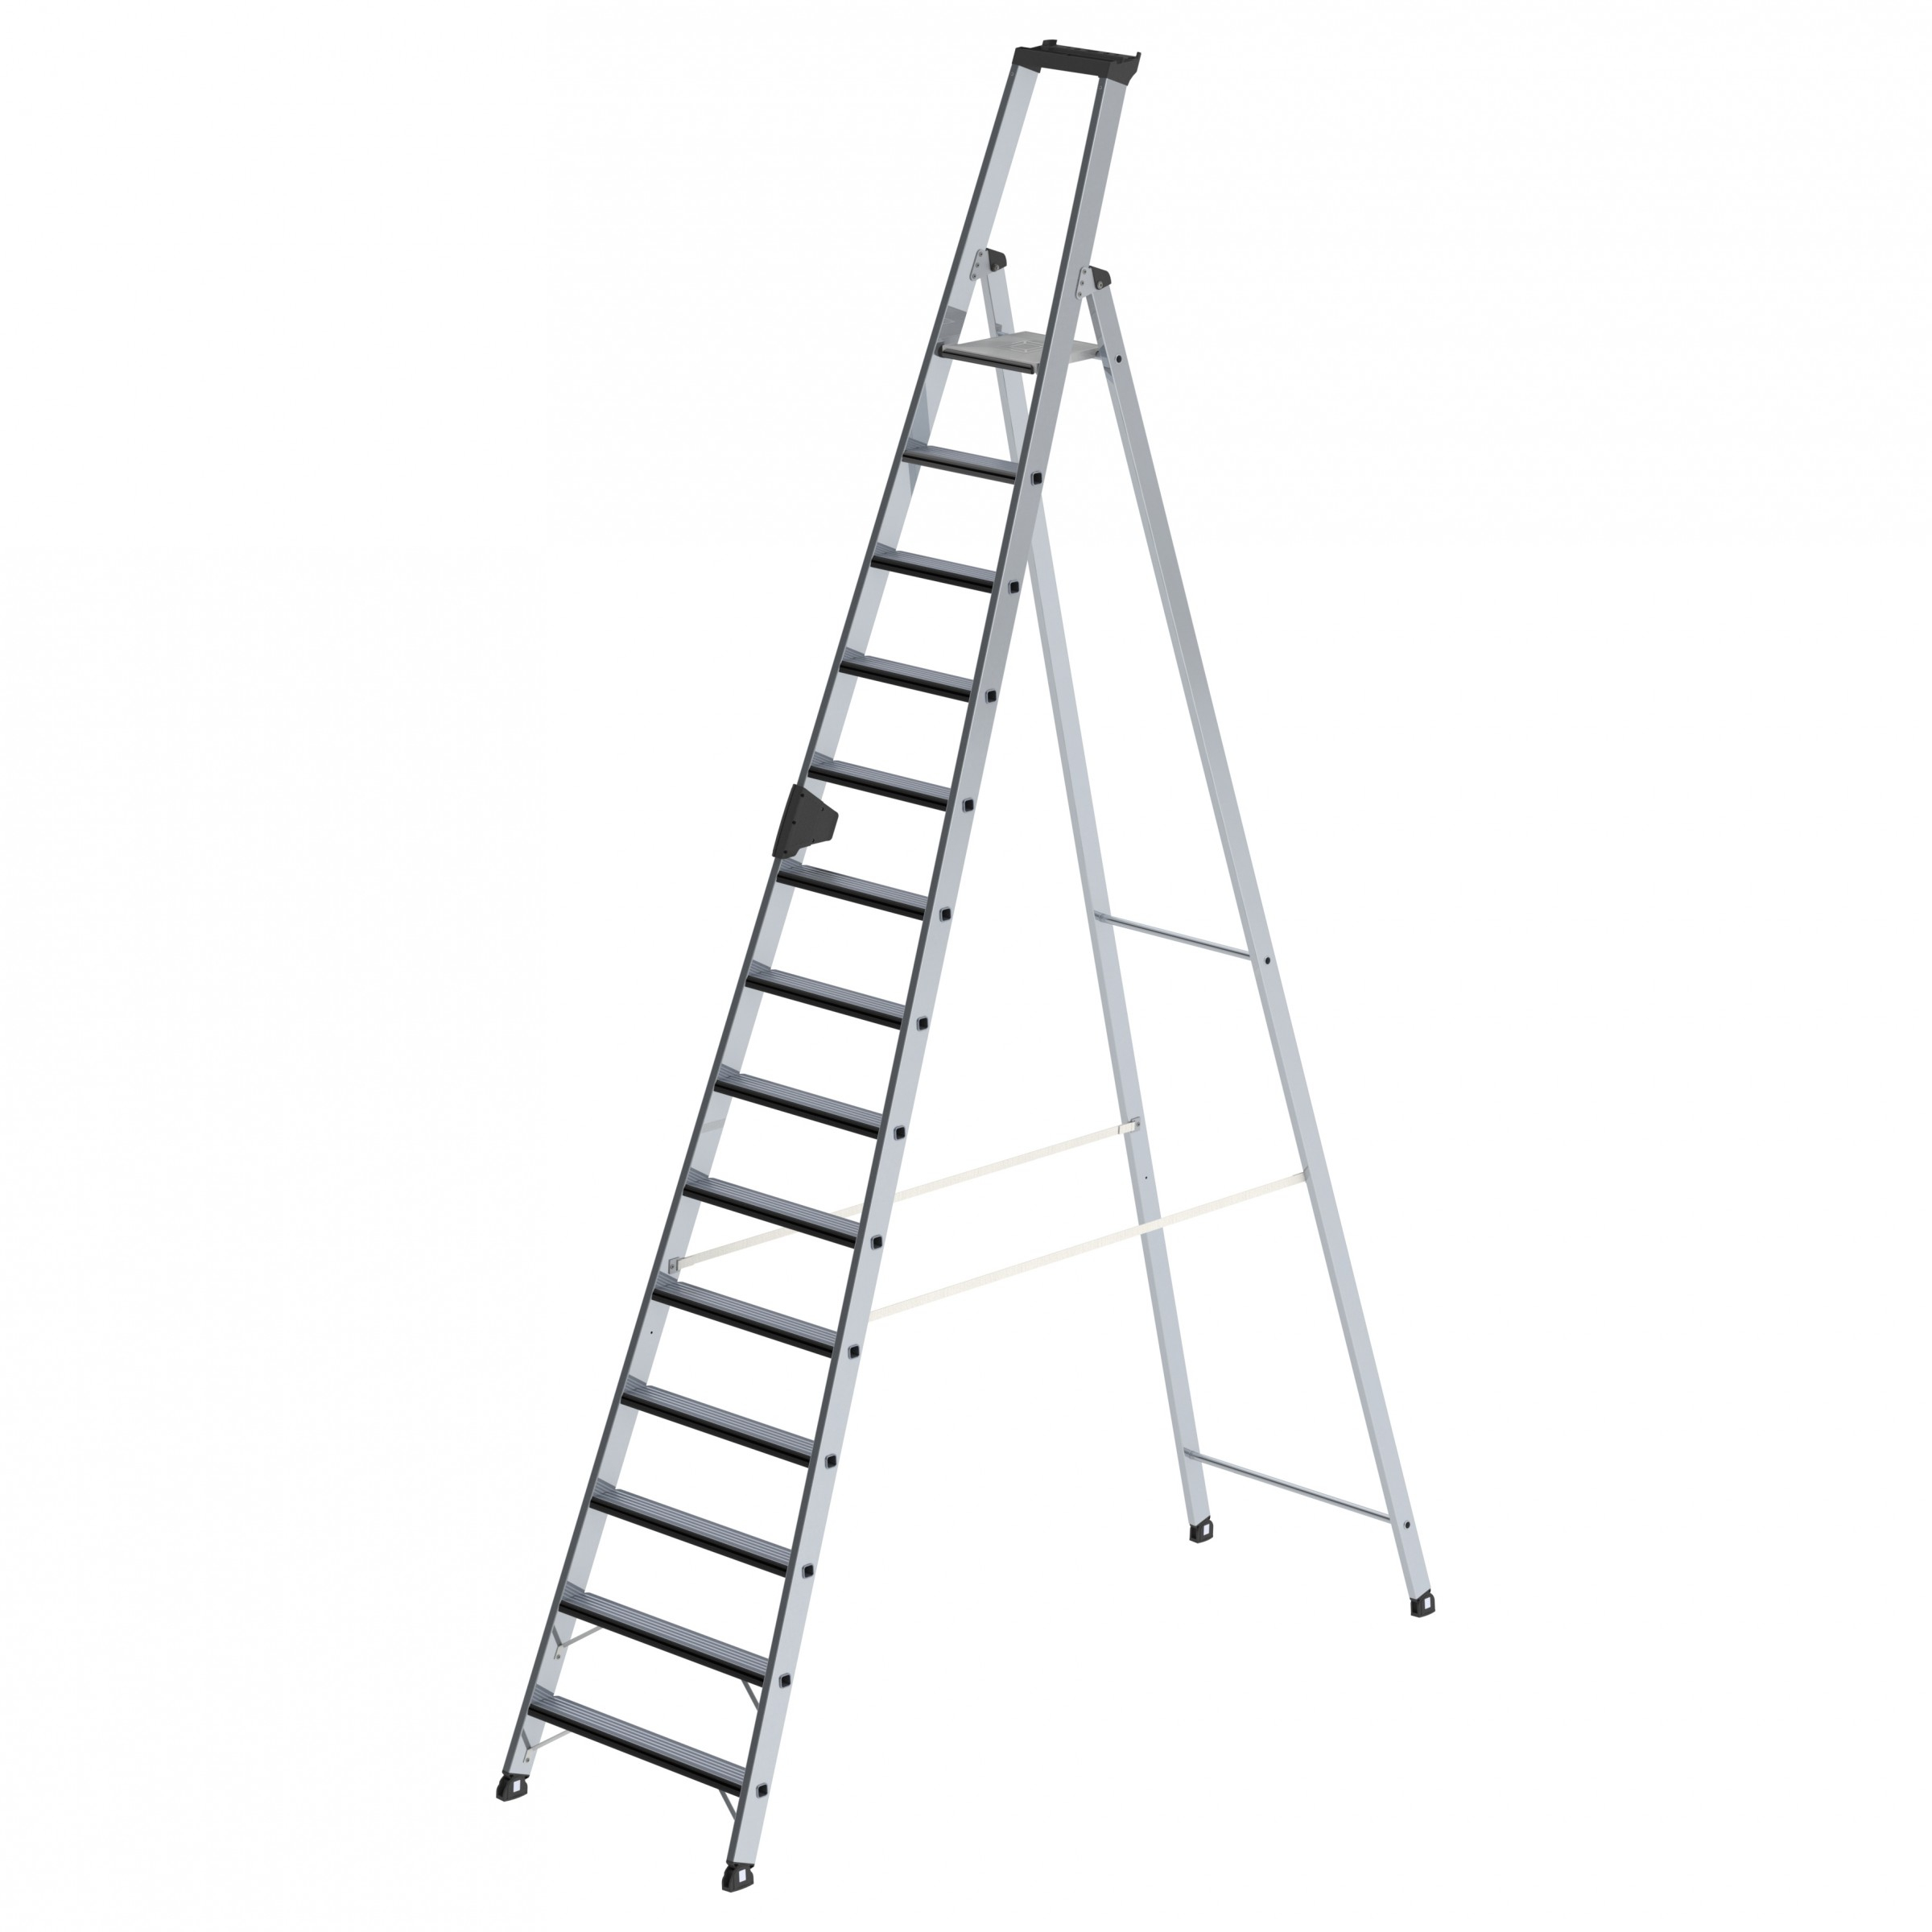 Stufen-Stehleiter einseitig begehbar mit relax step®, 9 Stufen